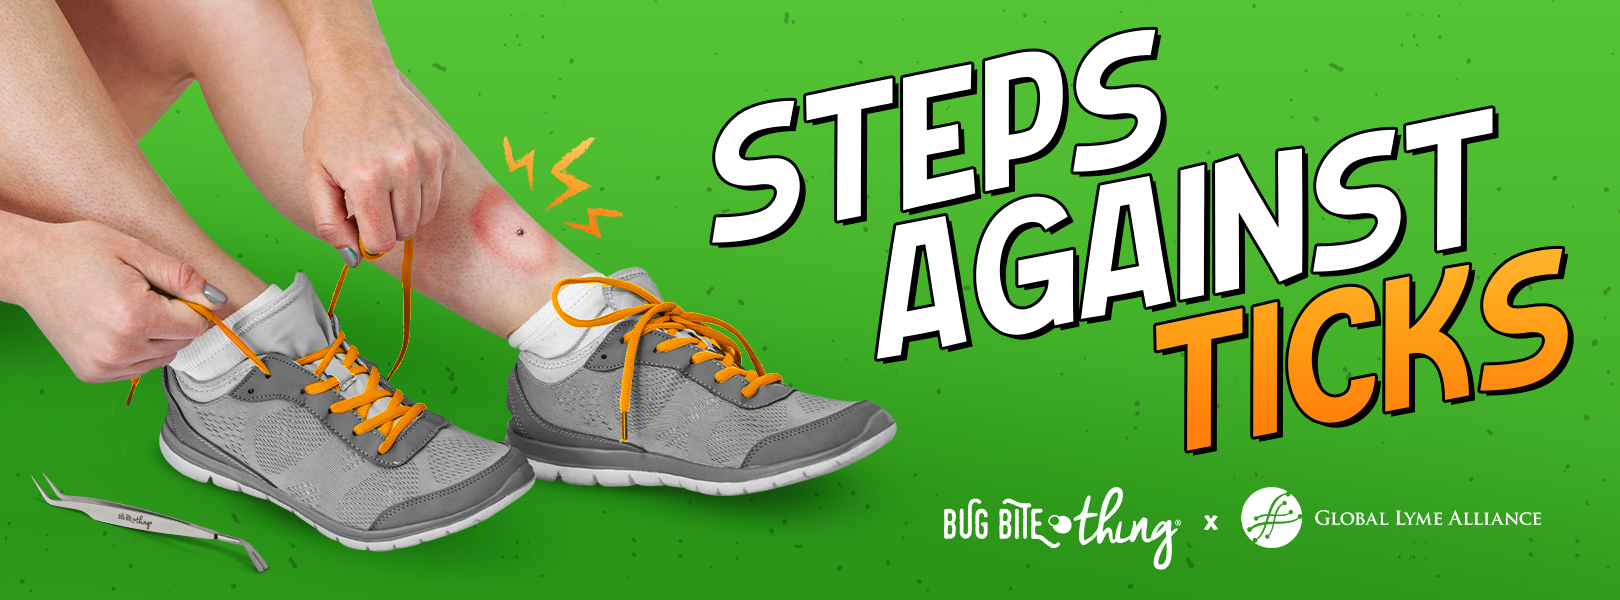 Steps Against Ticks